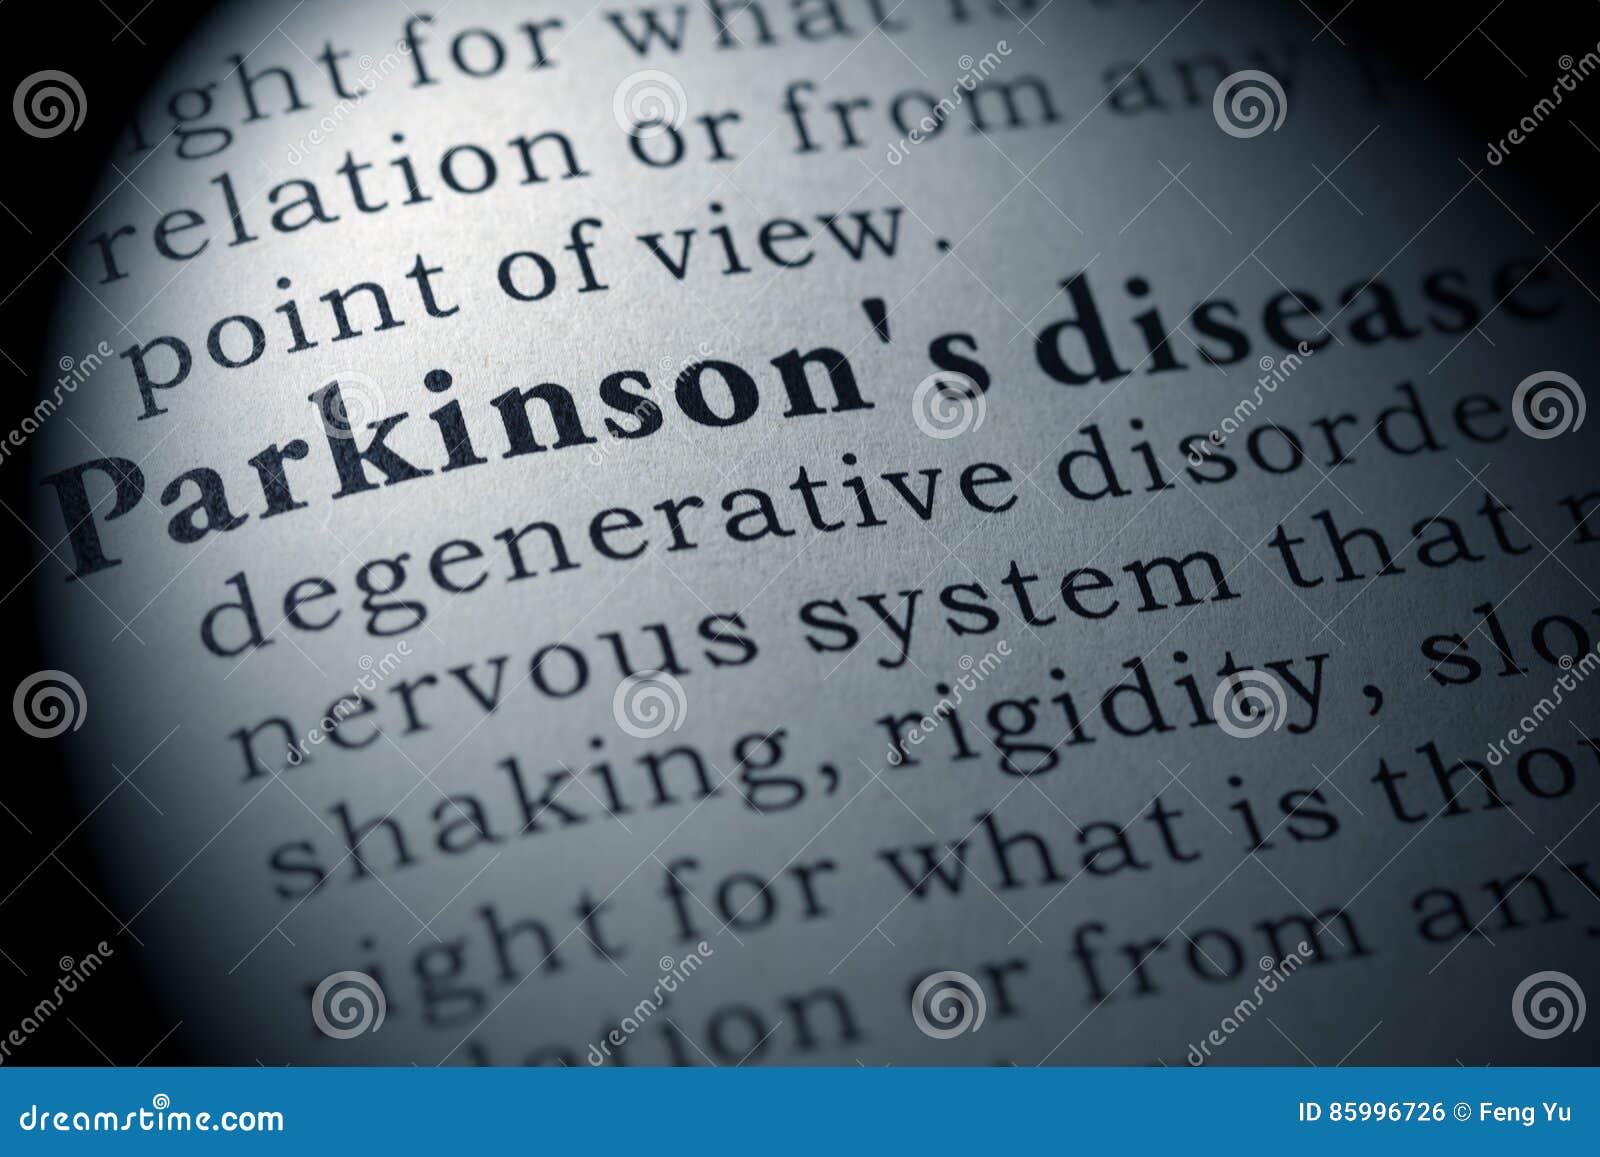 definition of parkinson`s disease